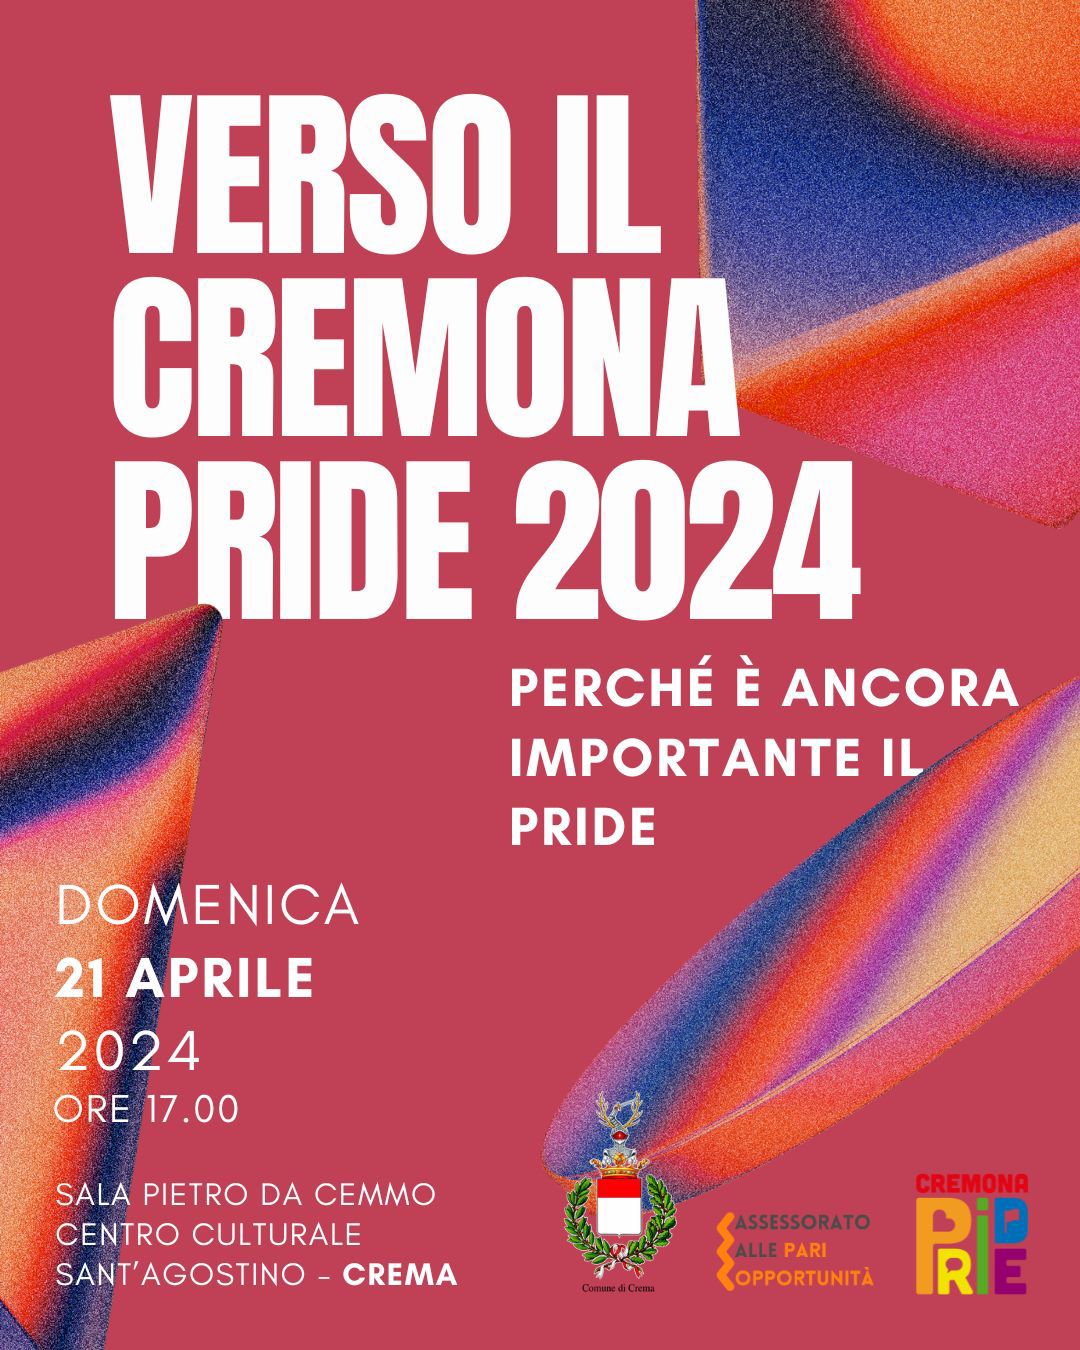 Anche Crema verso il Cremona Pride 2024